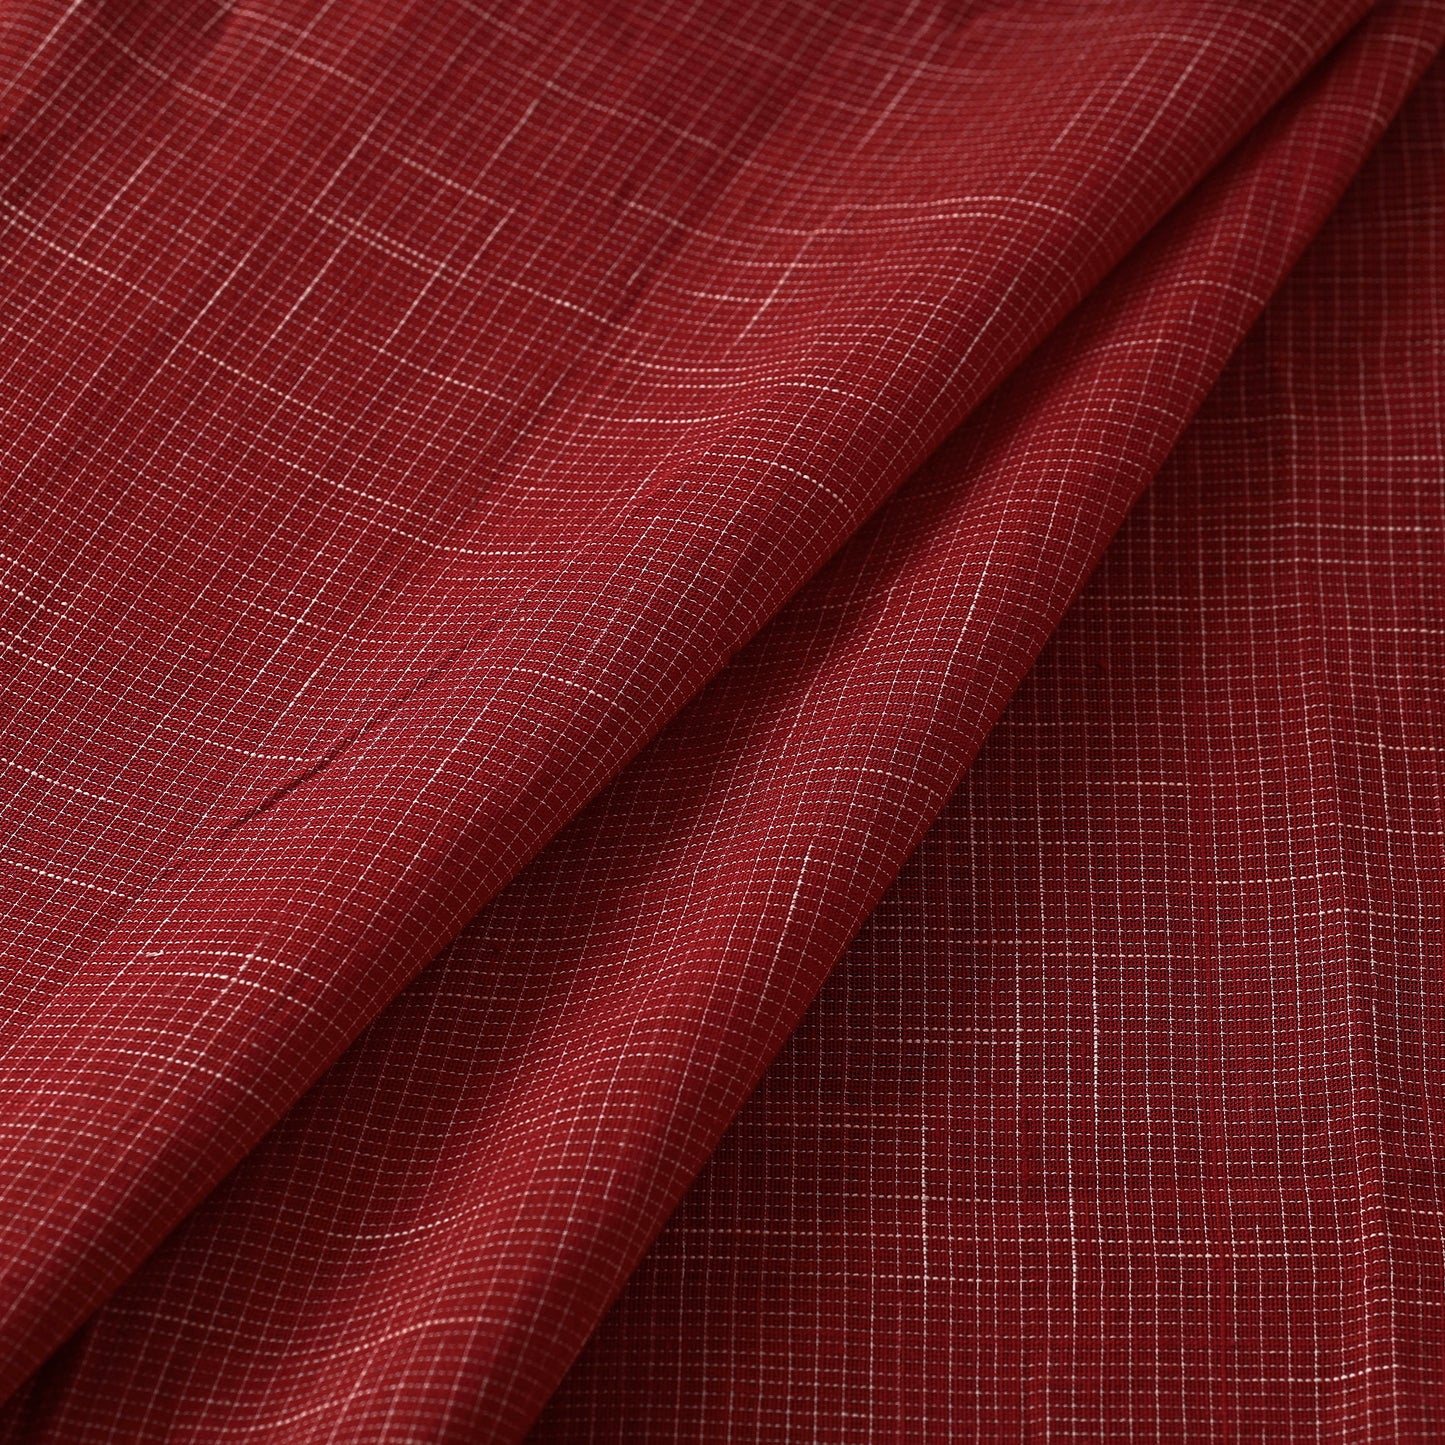 Godavari Checks Cotton Fabric